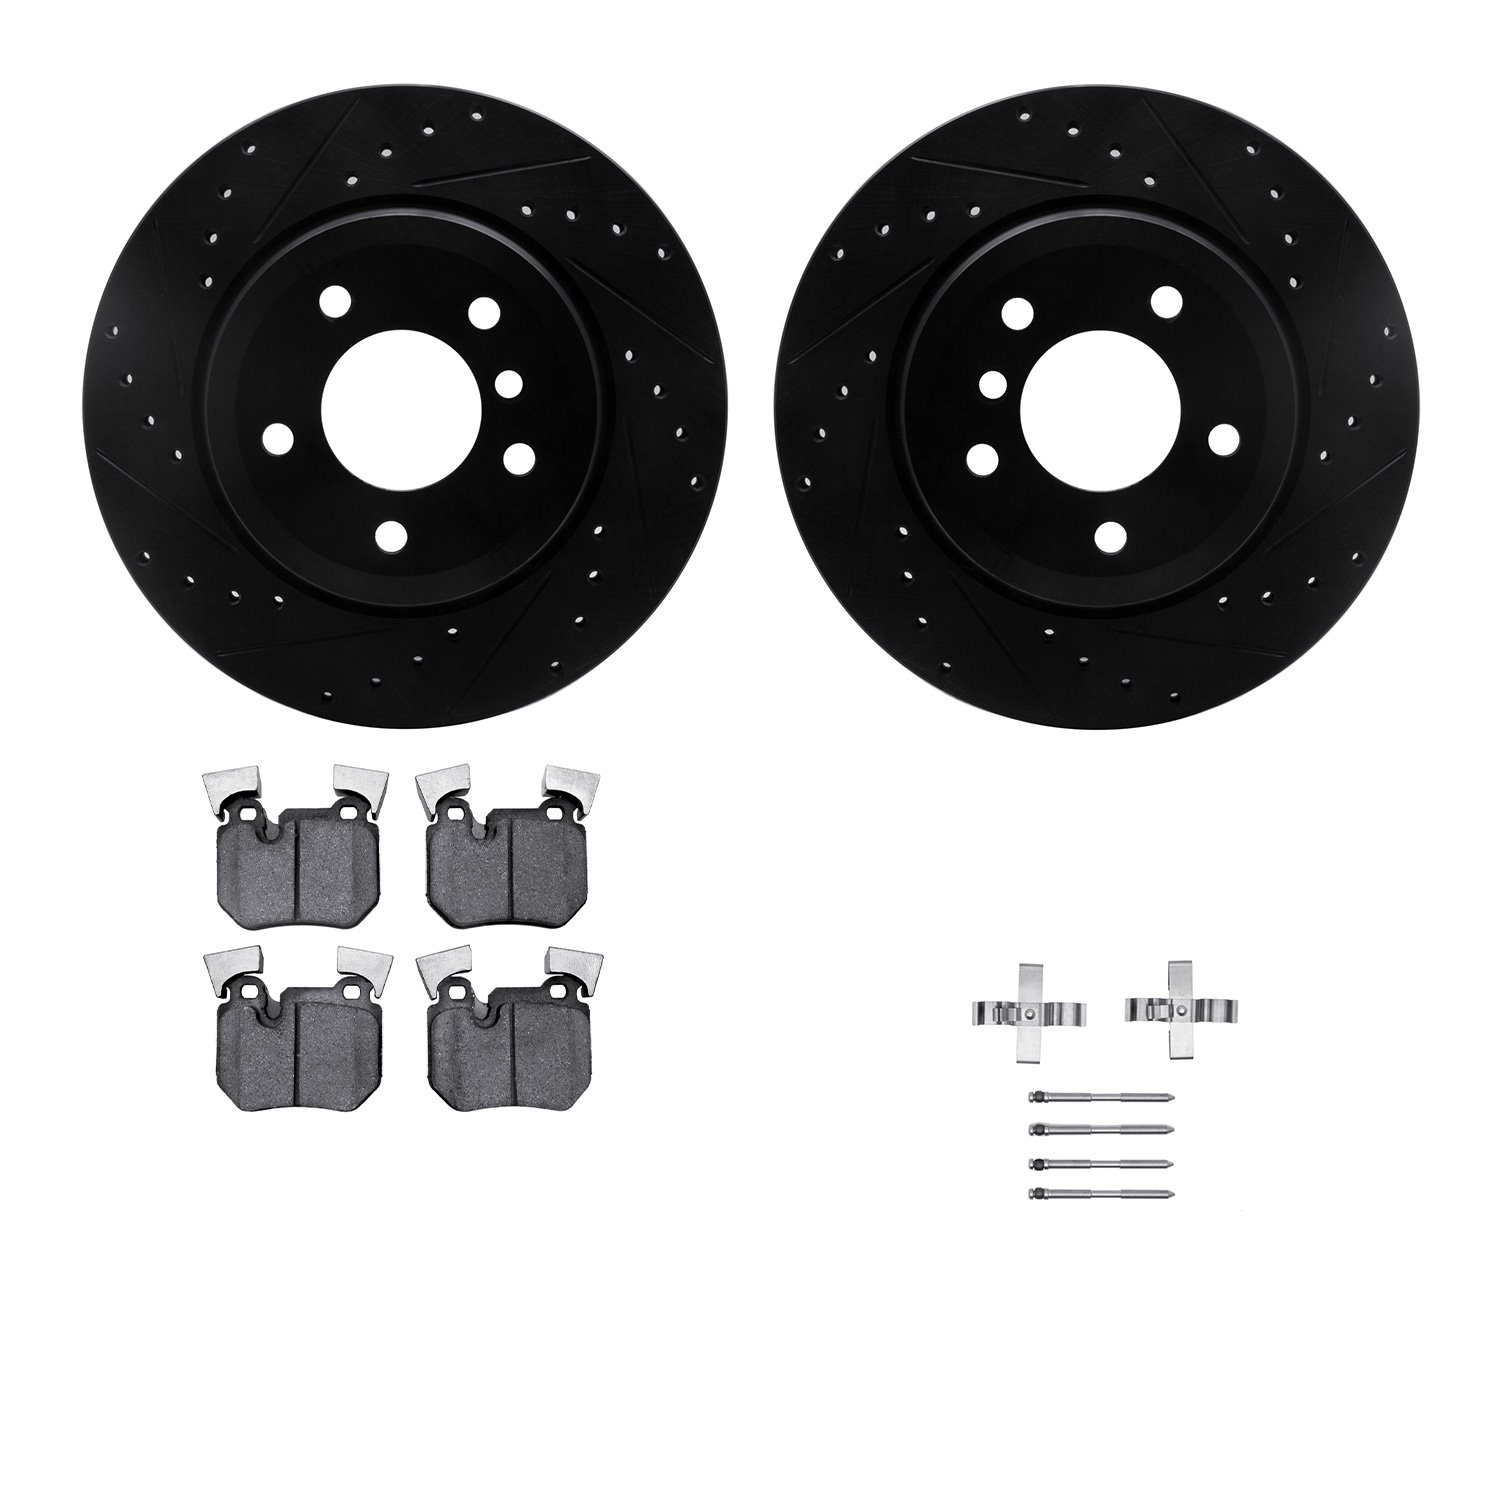 8612-31078 Drilled/Slotted Brake Rotors w/5000 Euro Ceramic Brake Pads Kit & Hardware [Black], 2008-2013 BMW, Position: Rear